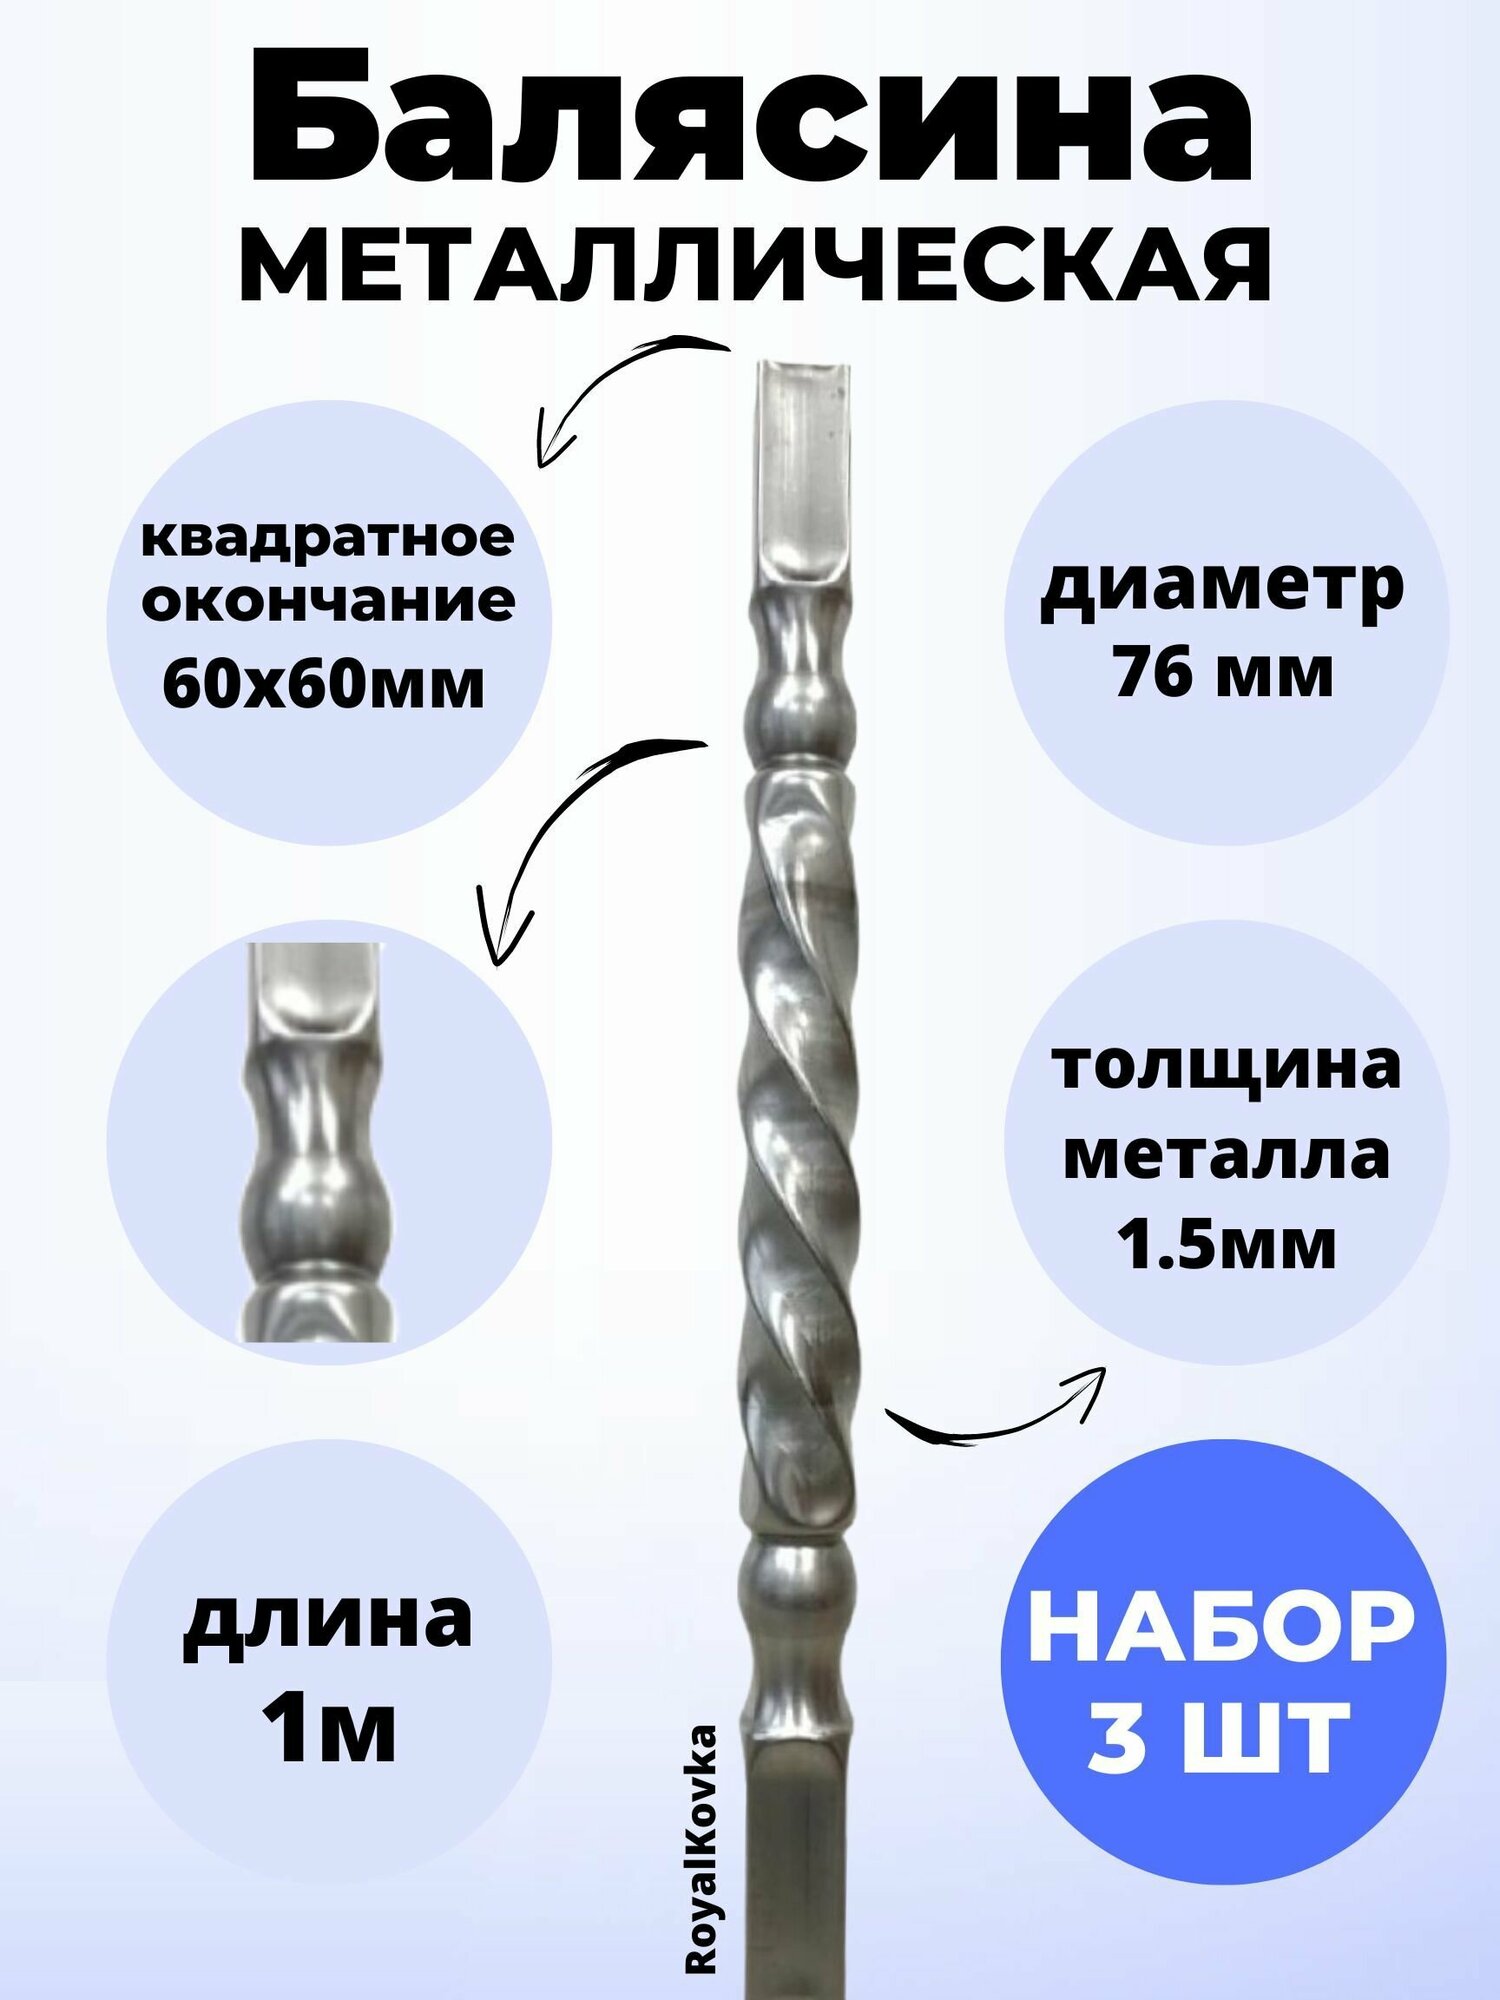 Набор балясин кованых металлических Royal Kovka 3 шт диаметр 76 мм квадратные окончания 60х60 мм арт. 60*60.3 В. КВ 3